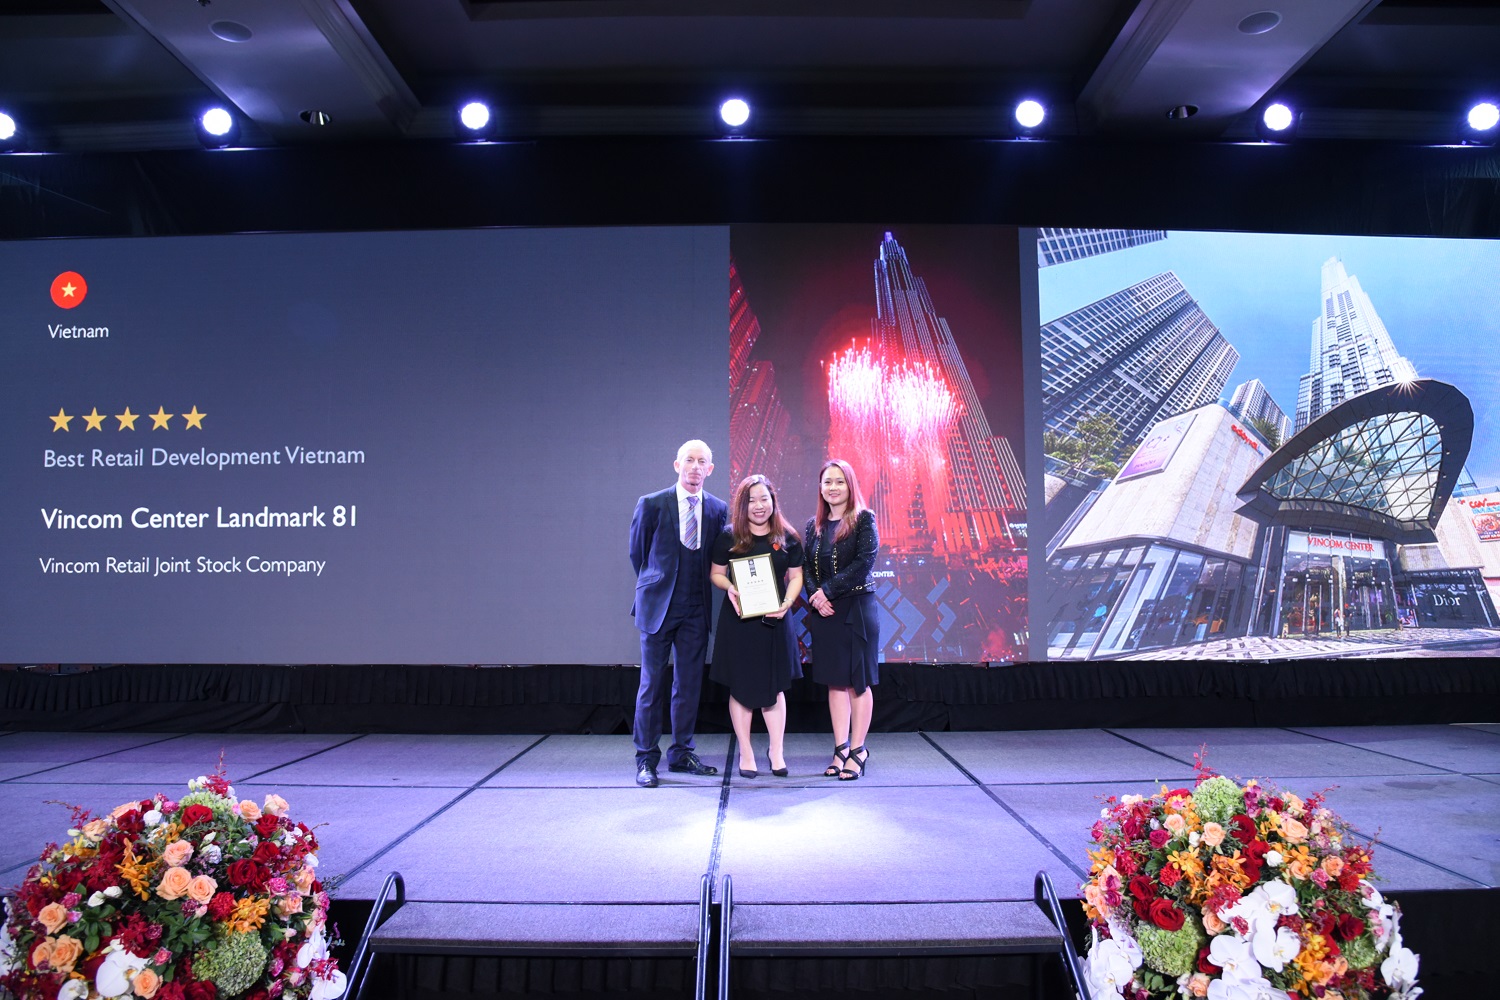 Đại diện Công ty cổ phần Vincom Retail (đứng giữa) nhận giải thưởng“Trung tâm thương mại tốt nhất Việt Nam” tại đêm trao giải APPA 2019 tổ chức tại Thái Lan.